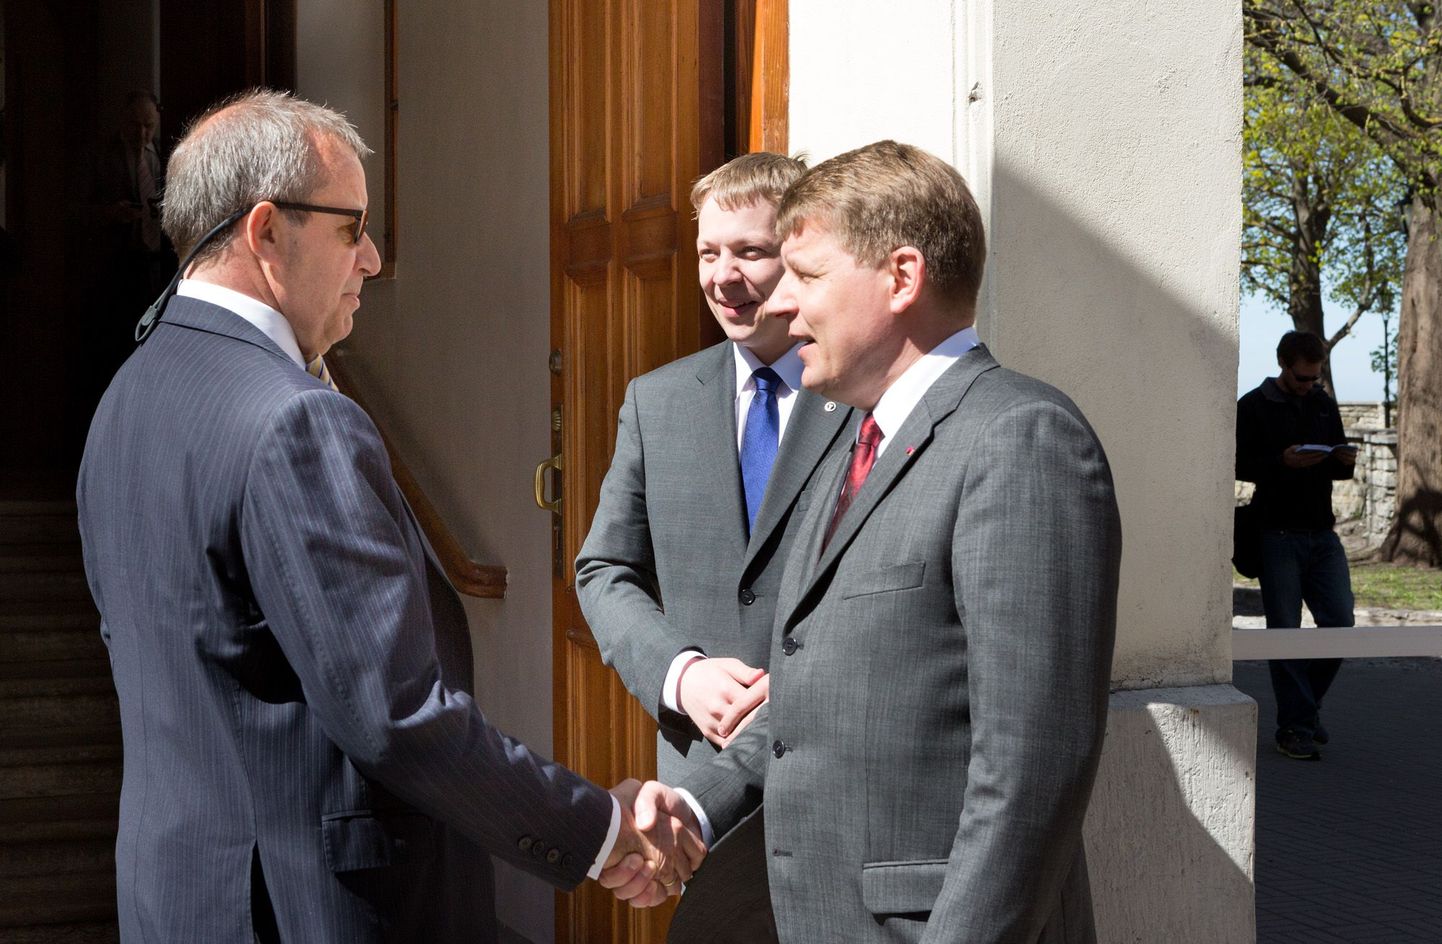 Kaubanduskoja esindajad Toomas Luman ja Mait Palts tervitavad presidenti